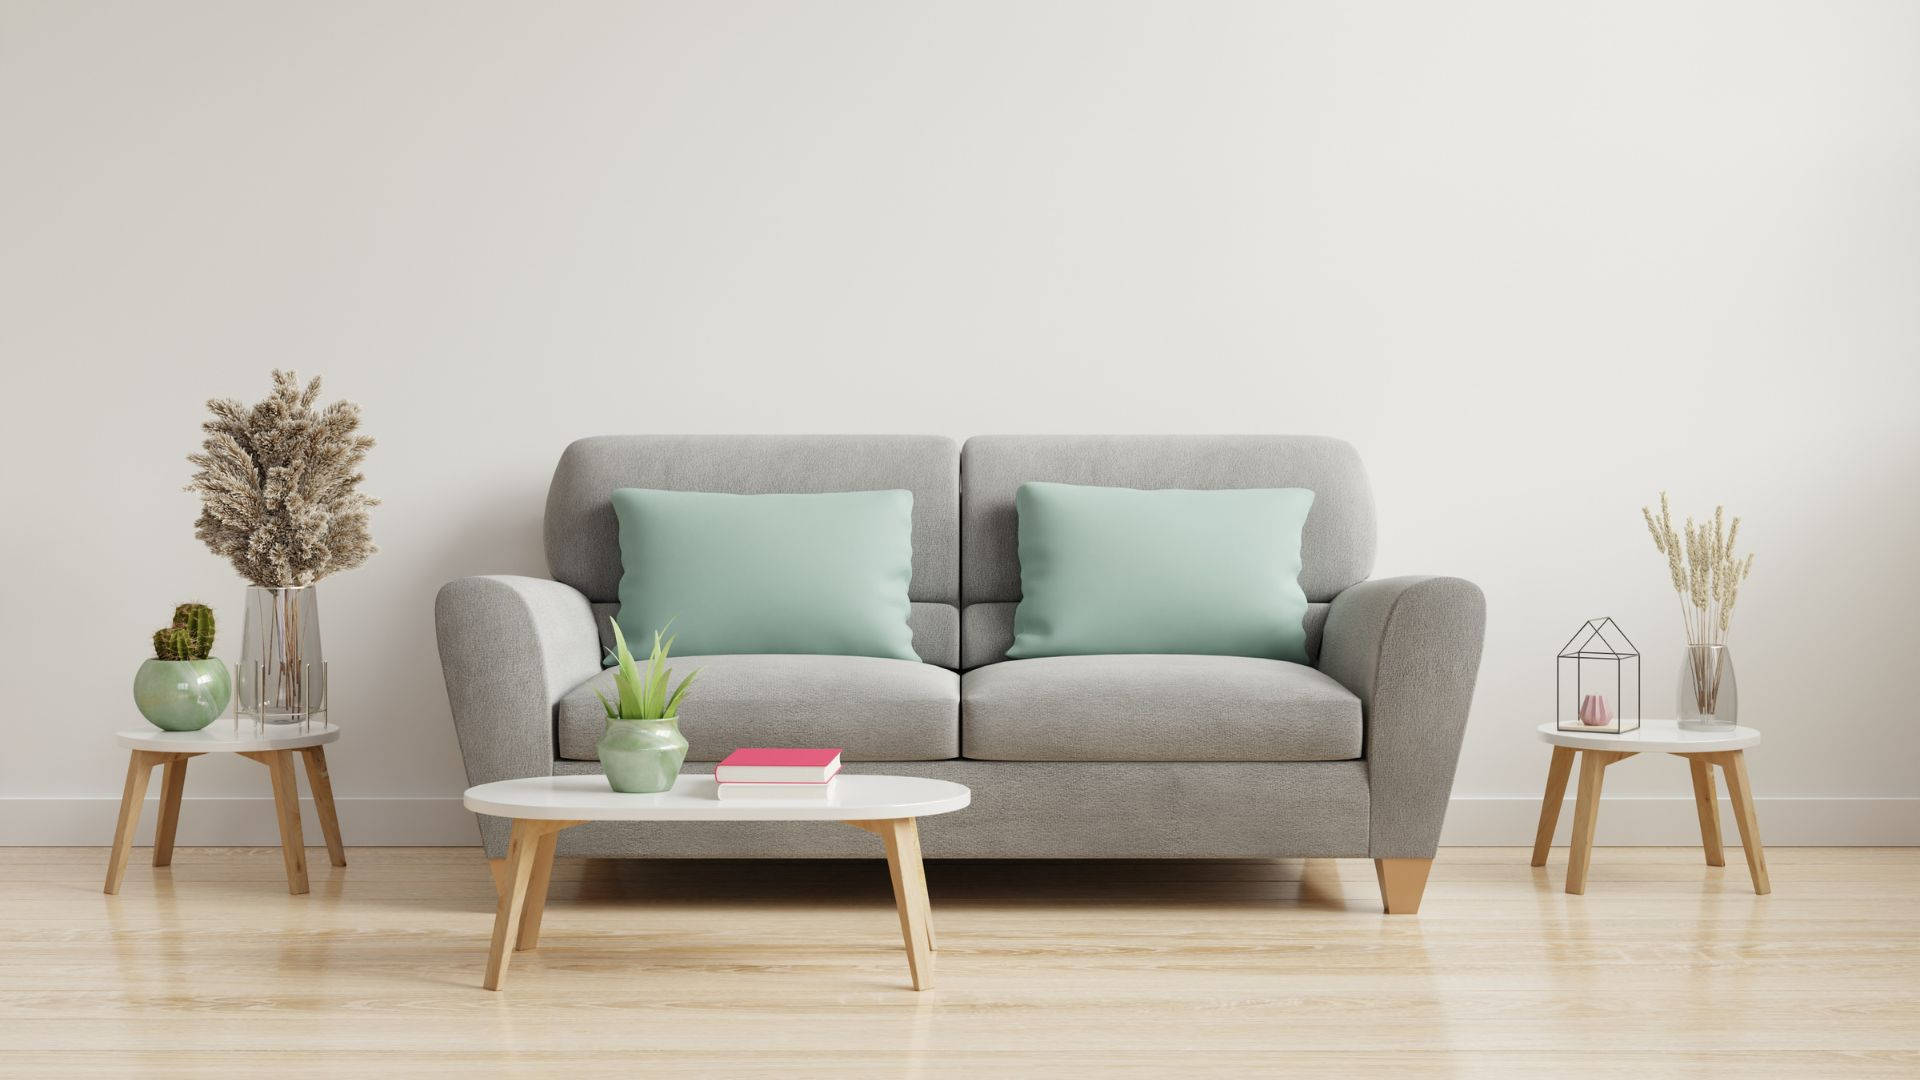 Modern Design Minimalist Furniture